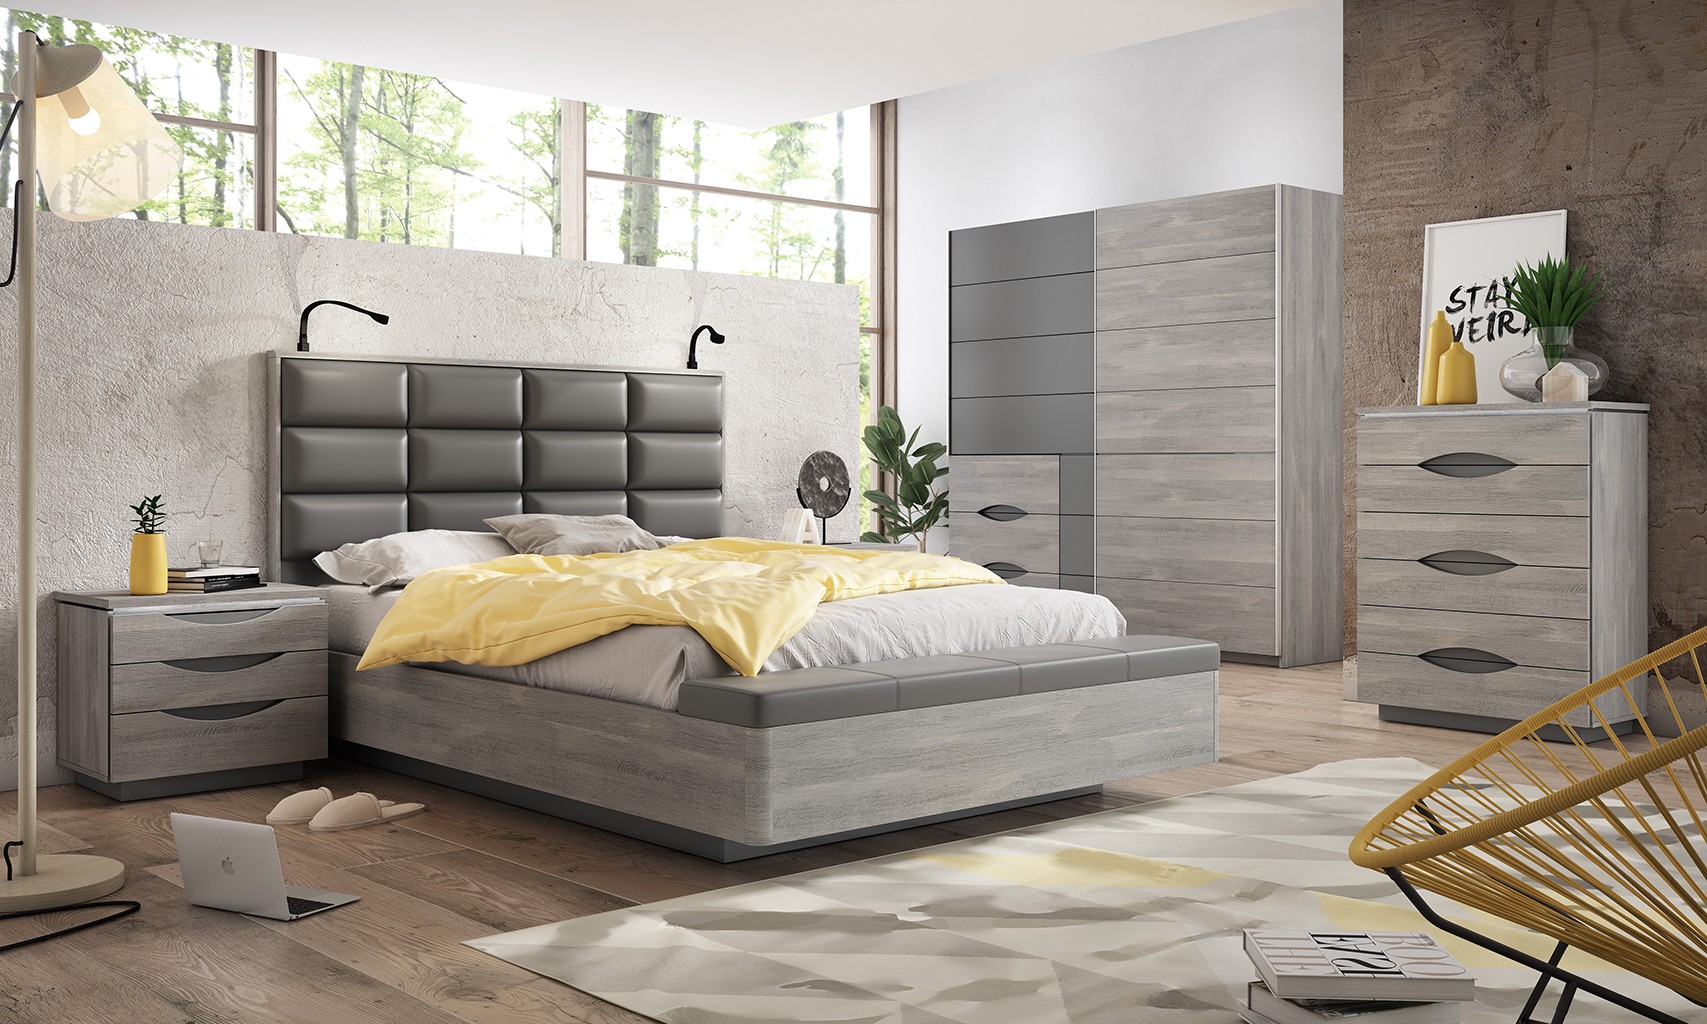 Cómodas para dormitorio  Comprar cómodas baratas - HOMNLIVING™